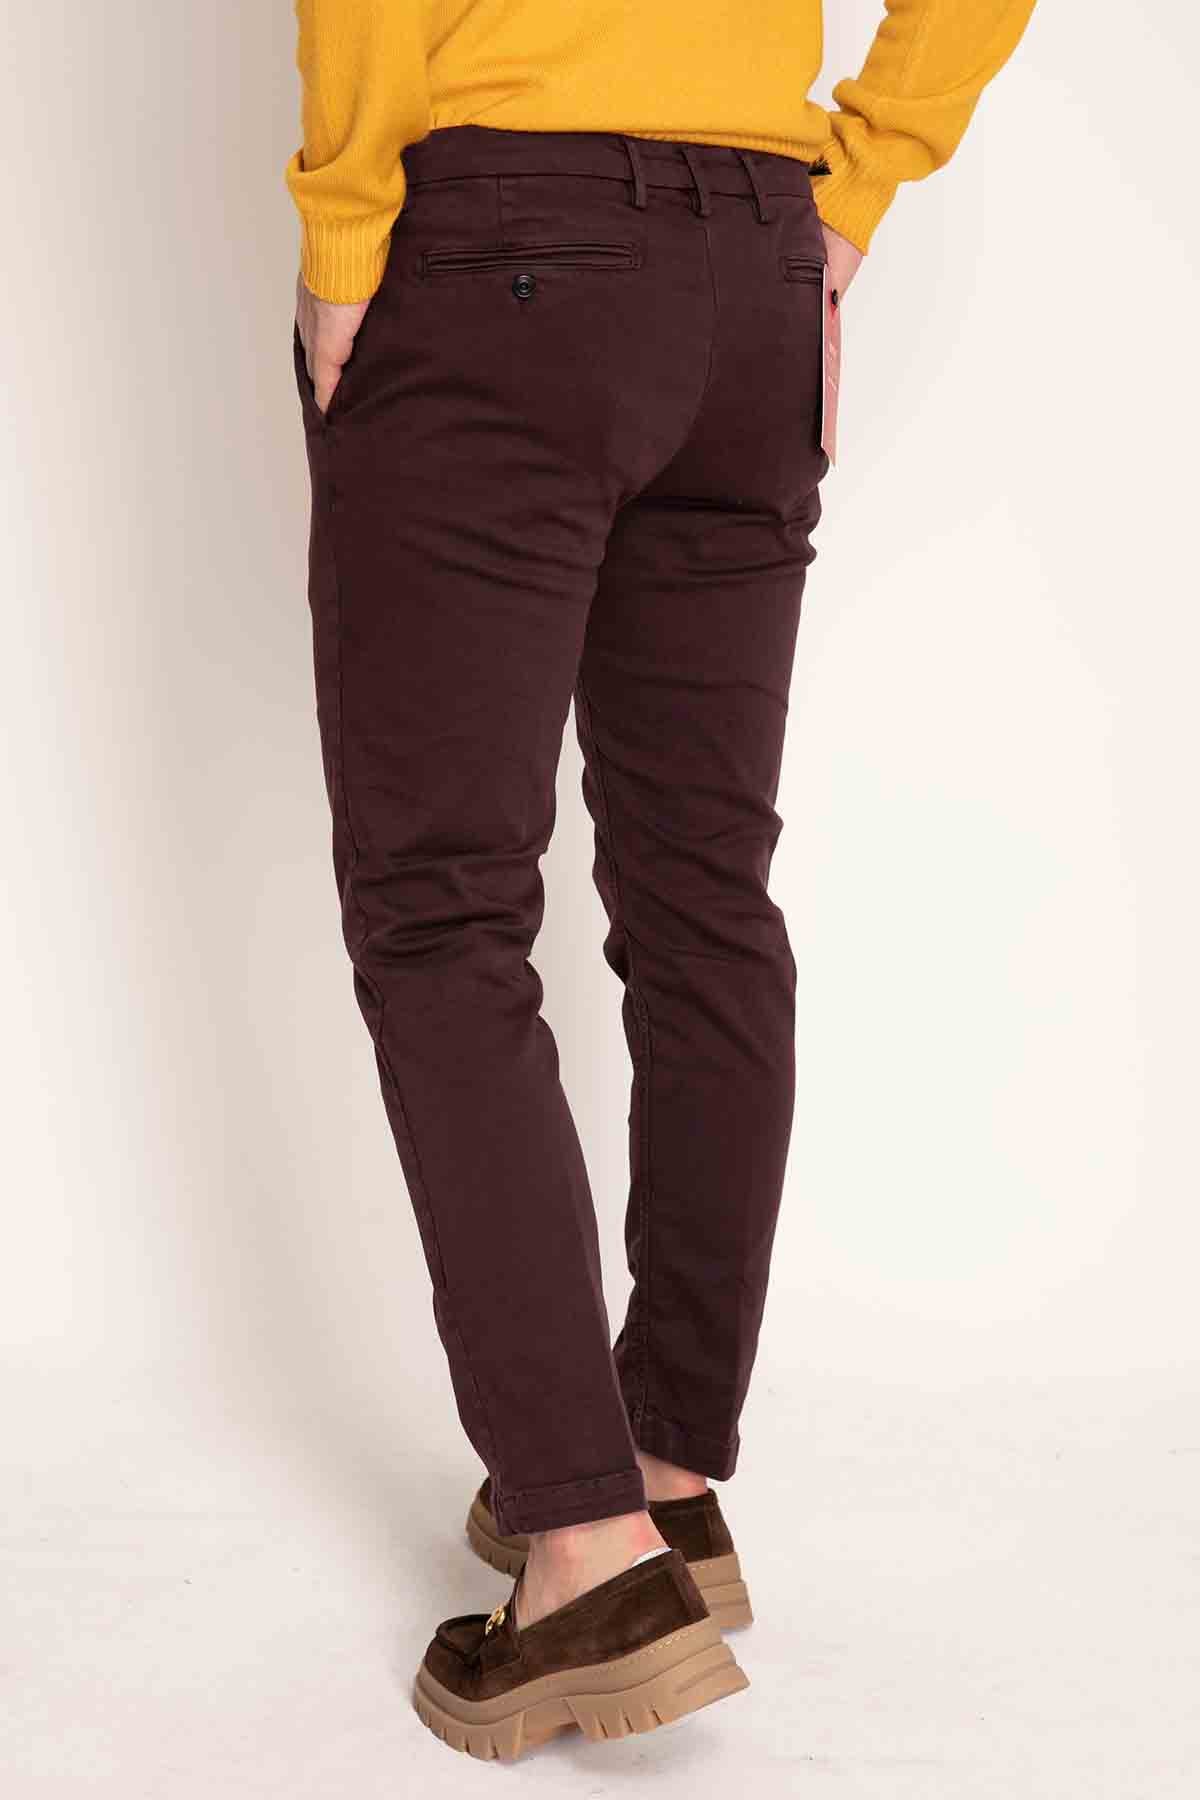 Replay Zeumar Yandan Cepli Slim Fit Pantolon-Libas Trendy Fashion Store